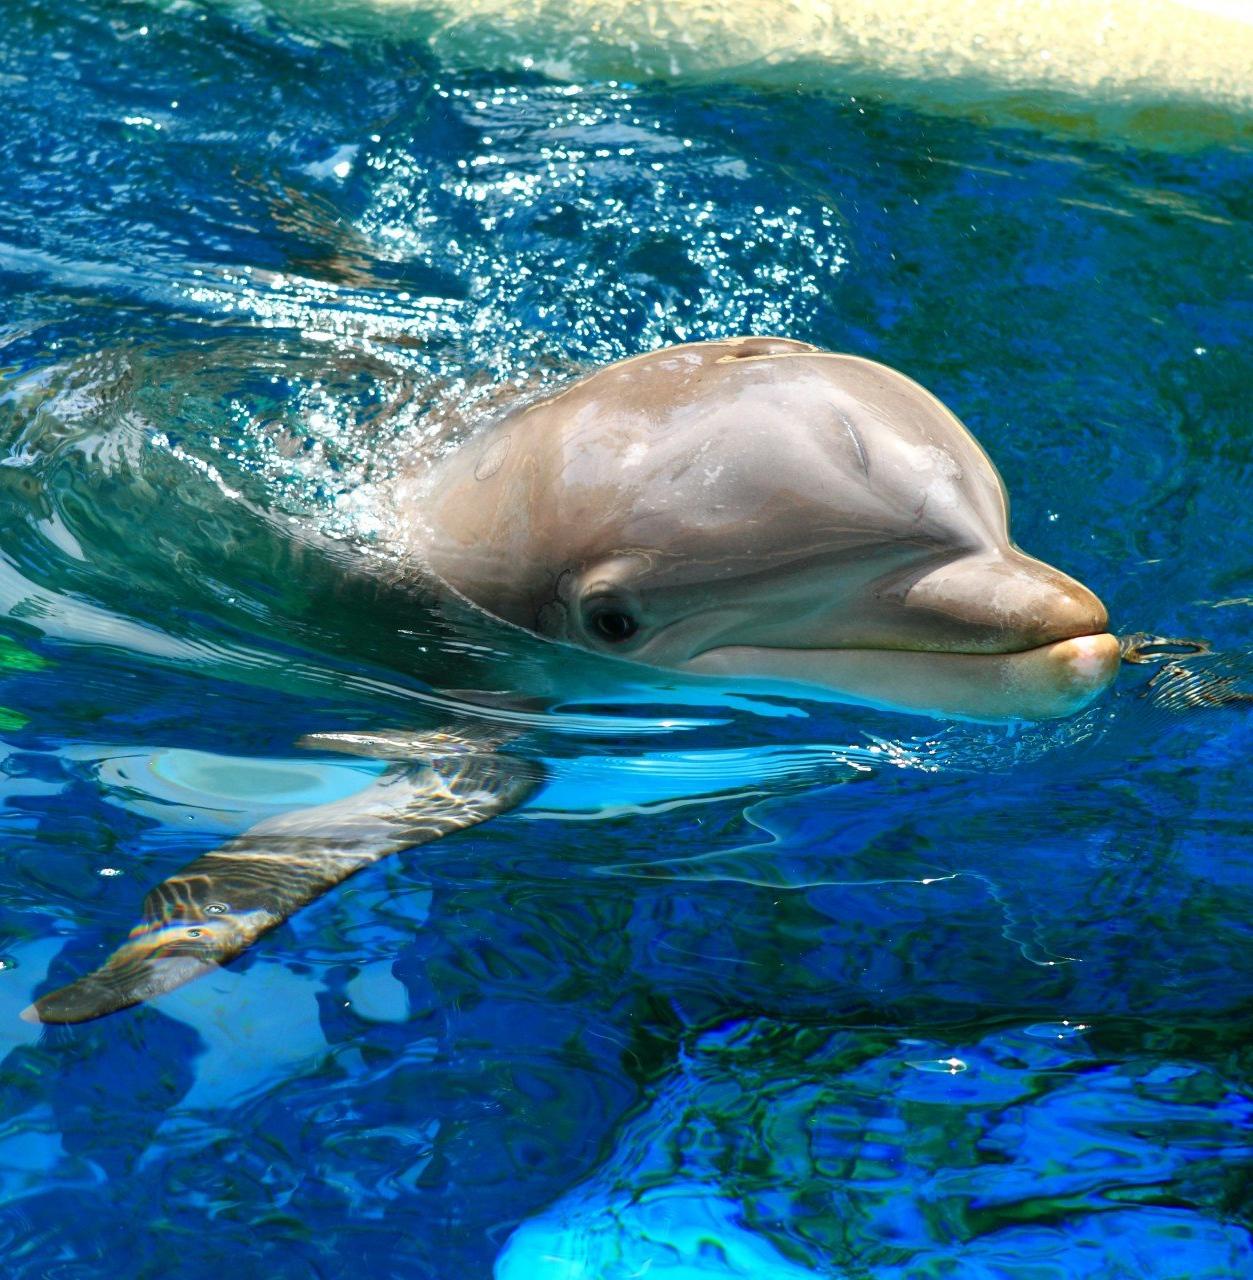 Реанимобиль для спасения дельфинов появился на Кубани 